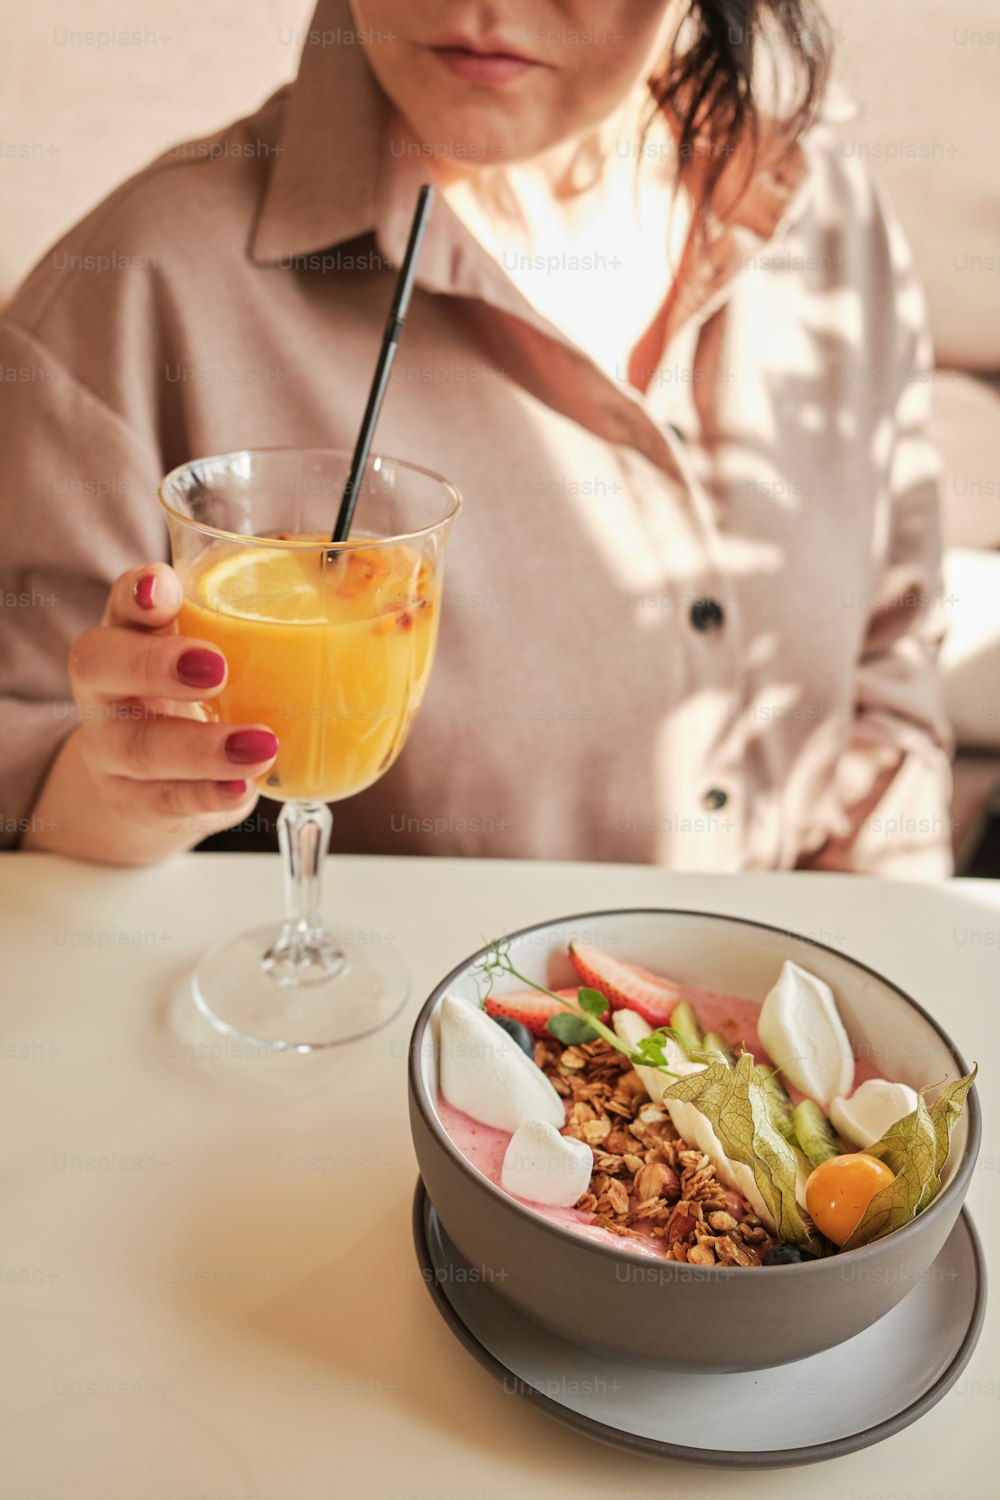 Una mujer sentada en una mesa con un tazón de comida y una bebida